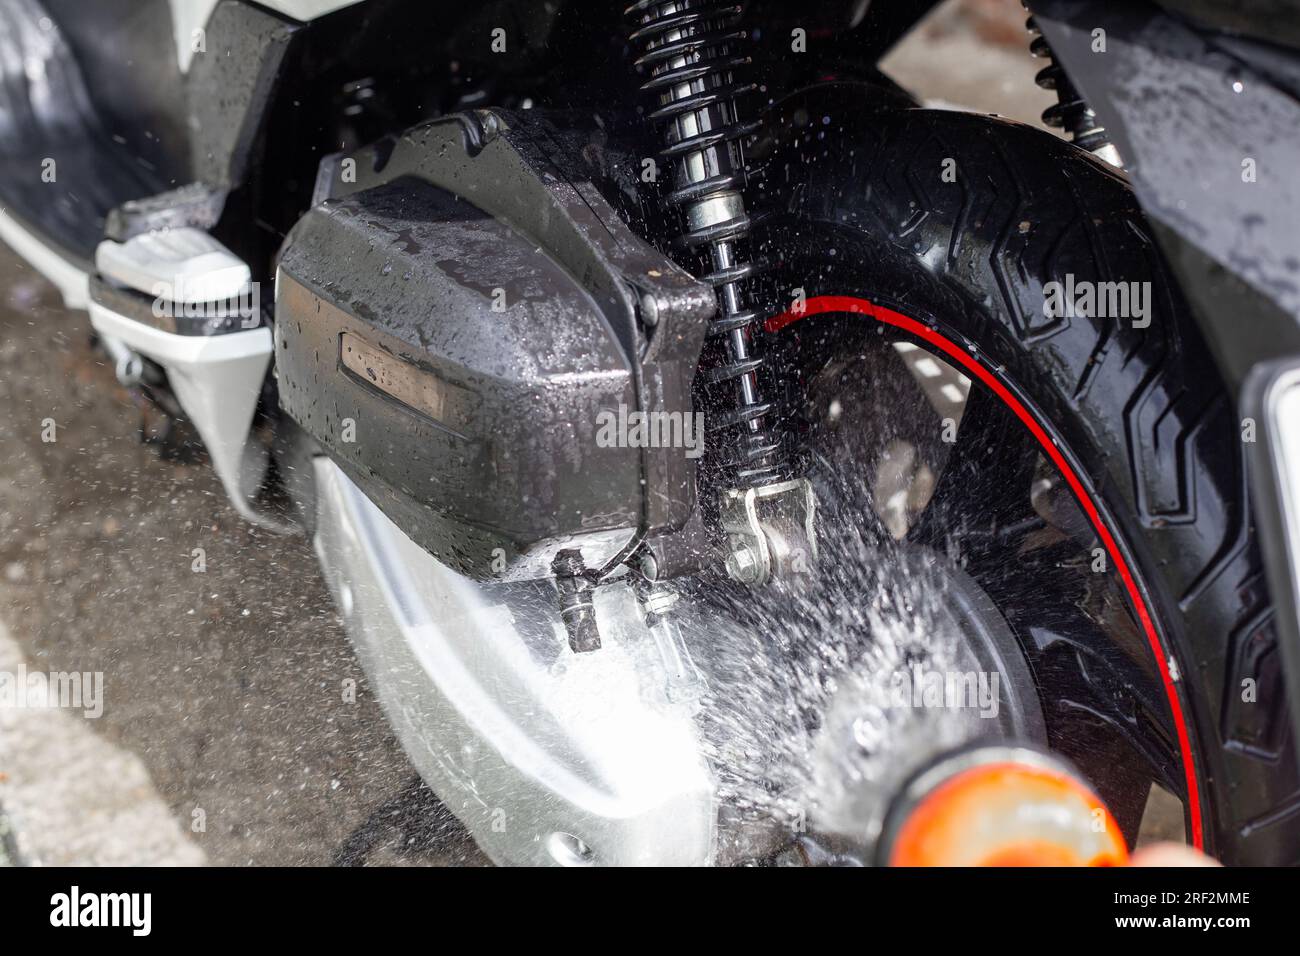 Le propriétaire lave sa moto Honda avec de l'eau provenant d'un tuyau. Anapa, Russie-04.10.2022 Banque D'Images